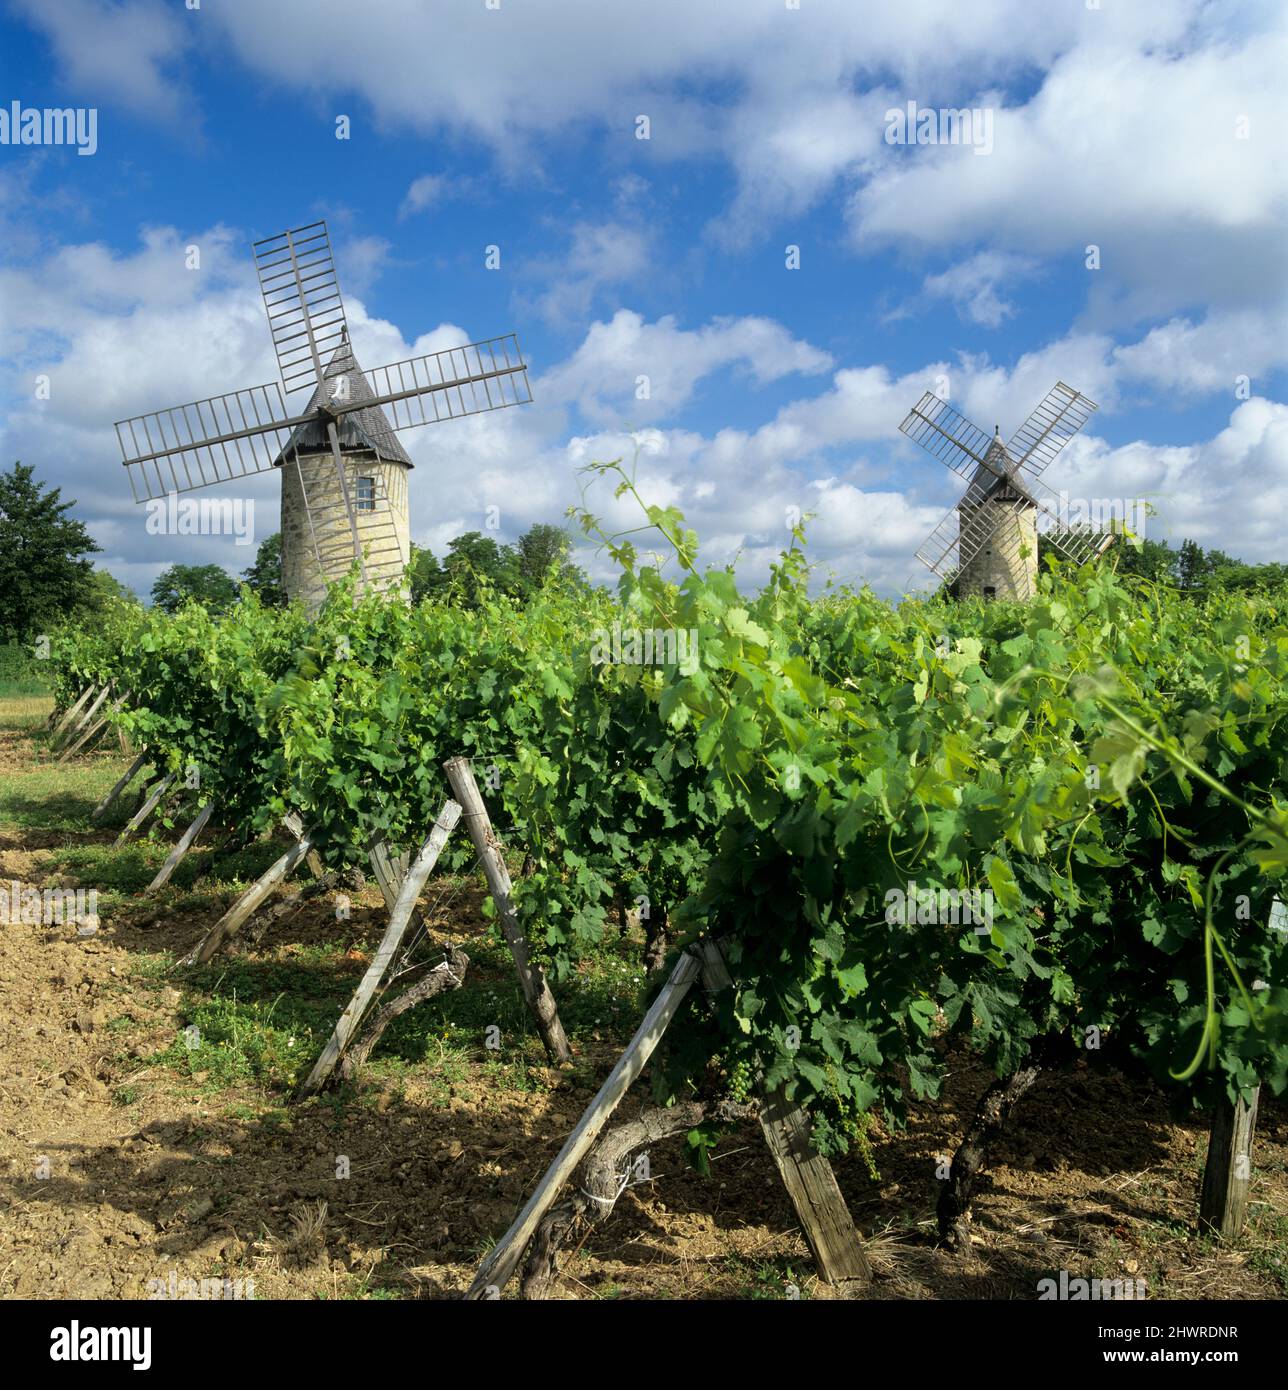 Die Windmühlen von Calon, die im Weinberg unter blauem Himmel stehen, Montagne, in der Nähe von Saint-Emilion, Nouvelle-Aquitaine, Frankreich, Europa Stockfoto